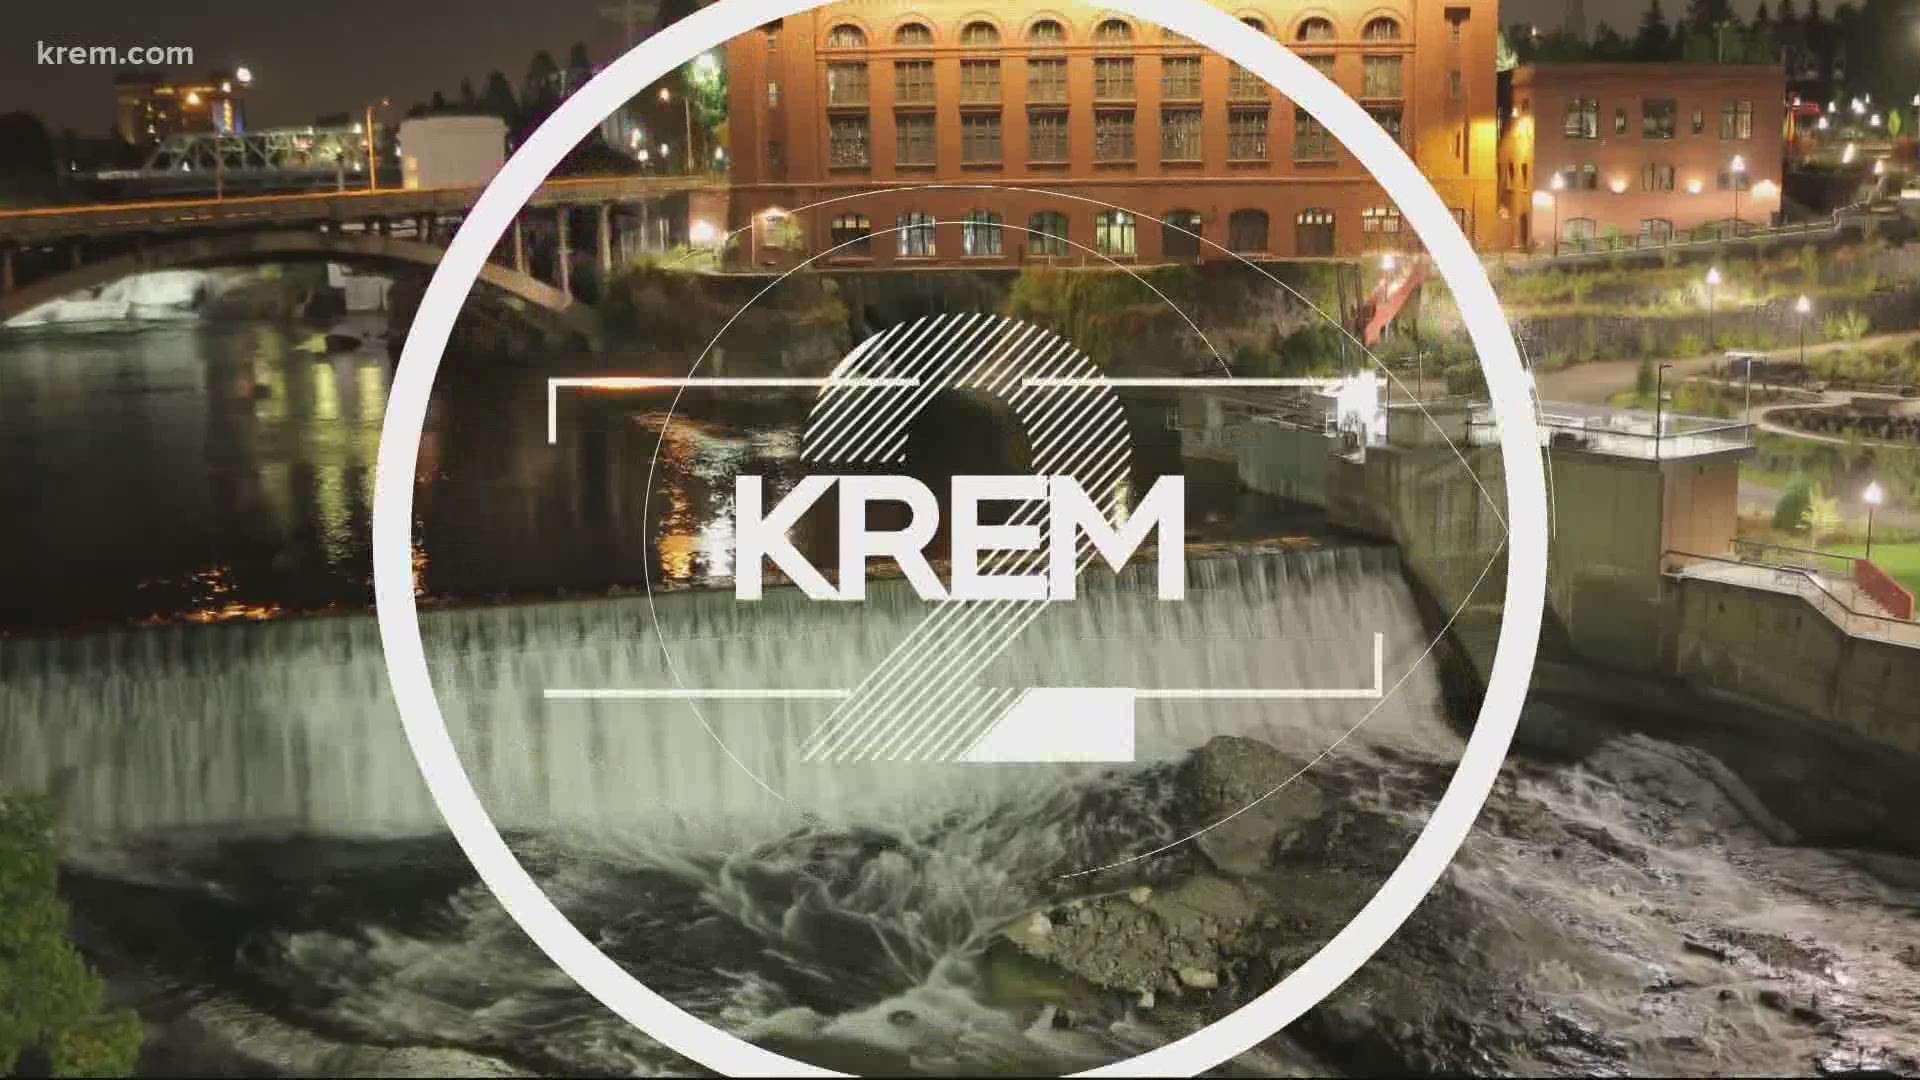 KREM 2 News at 11 on May 12, 2021